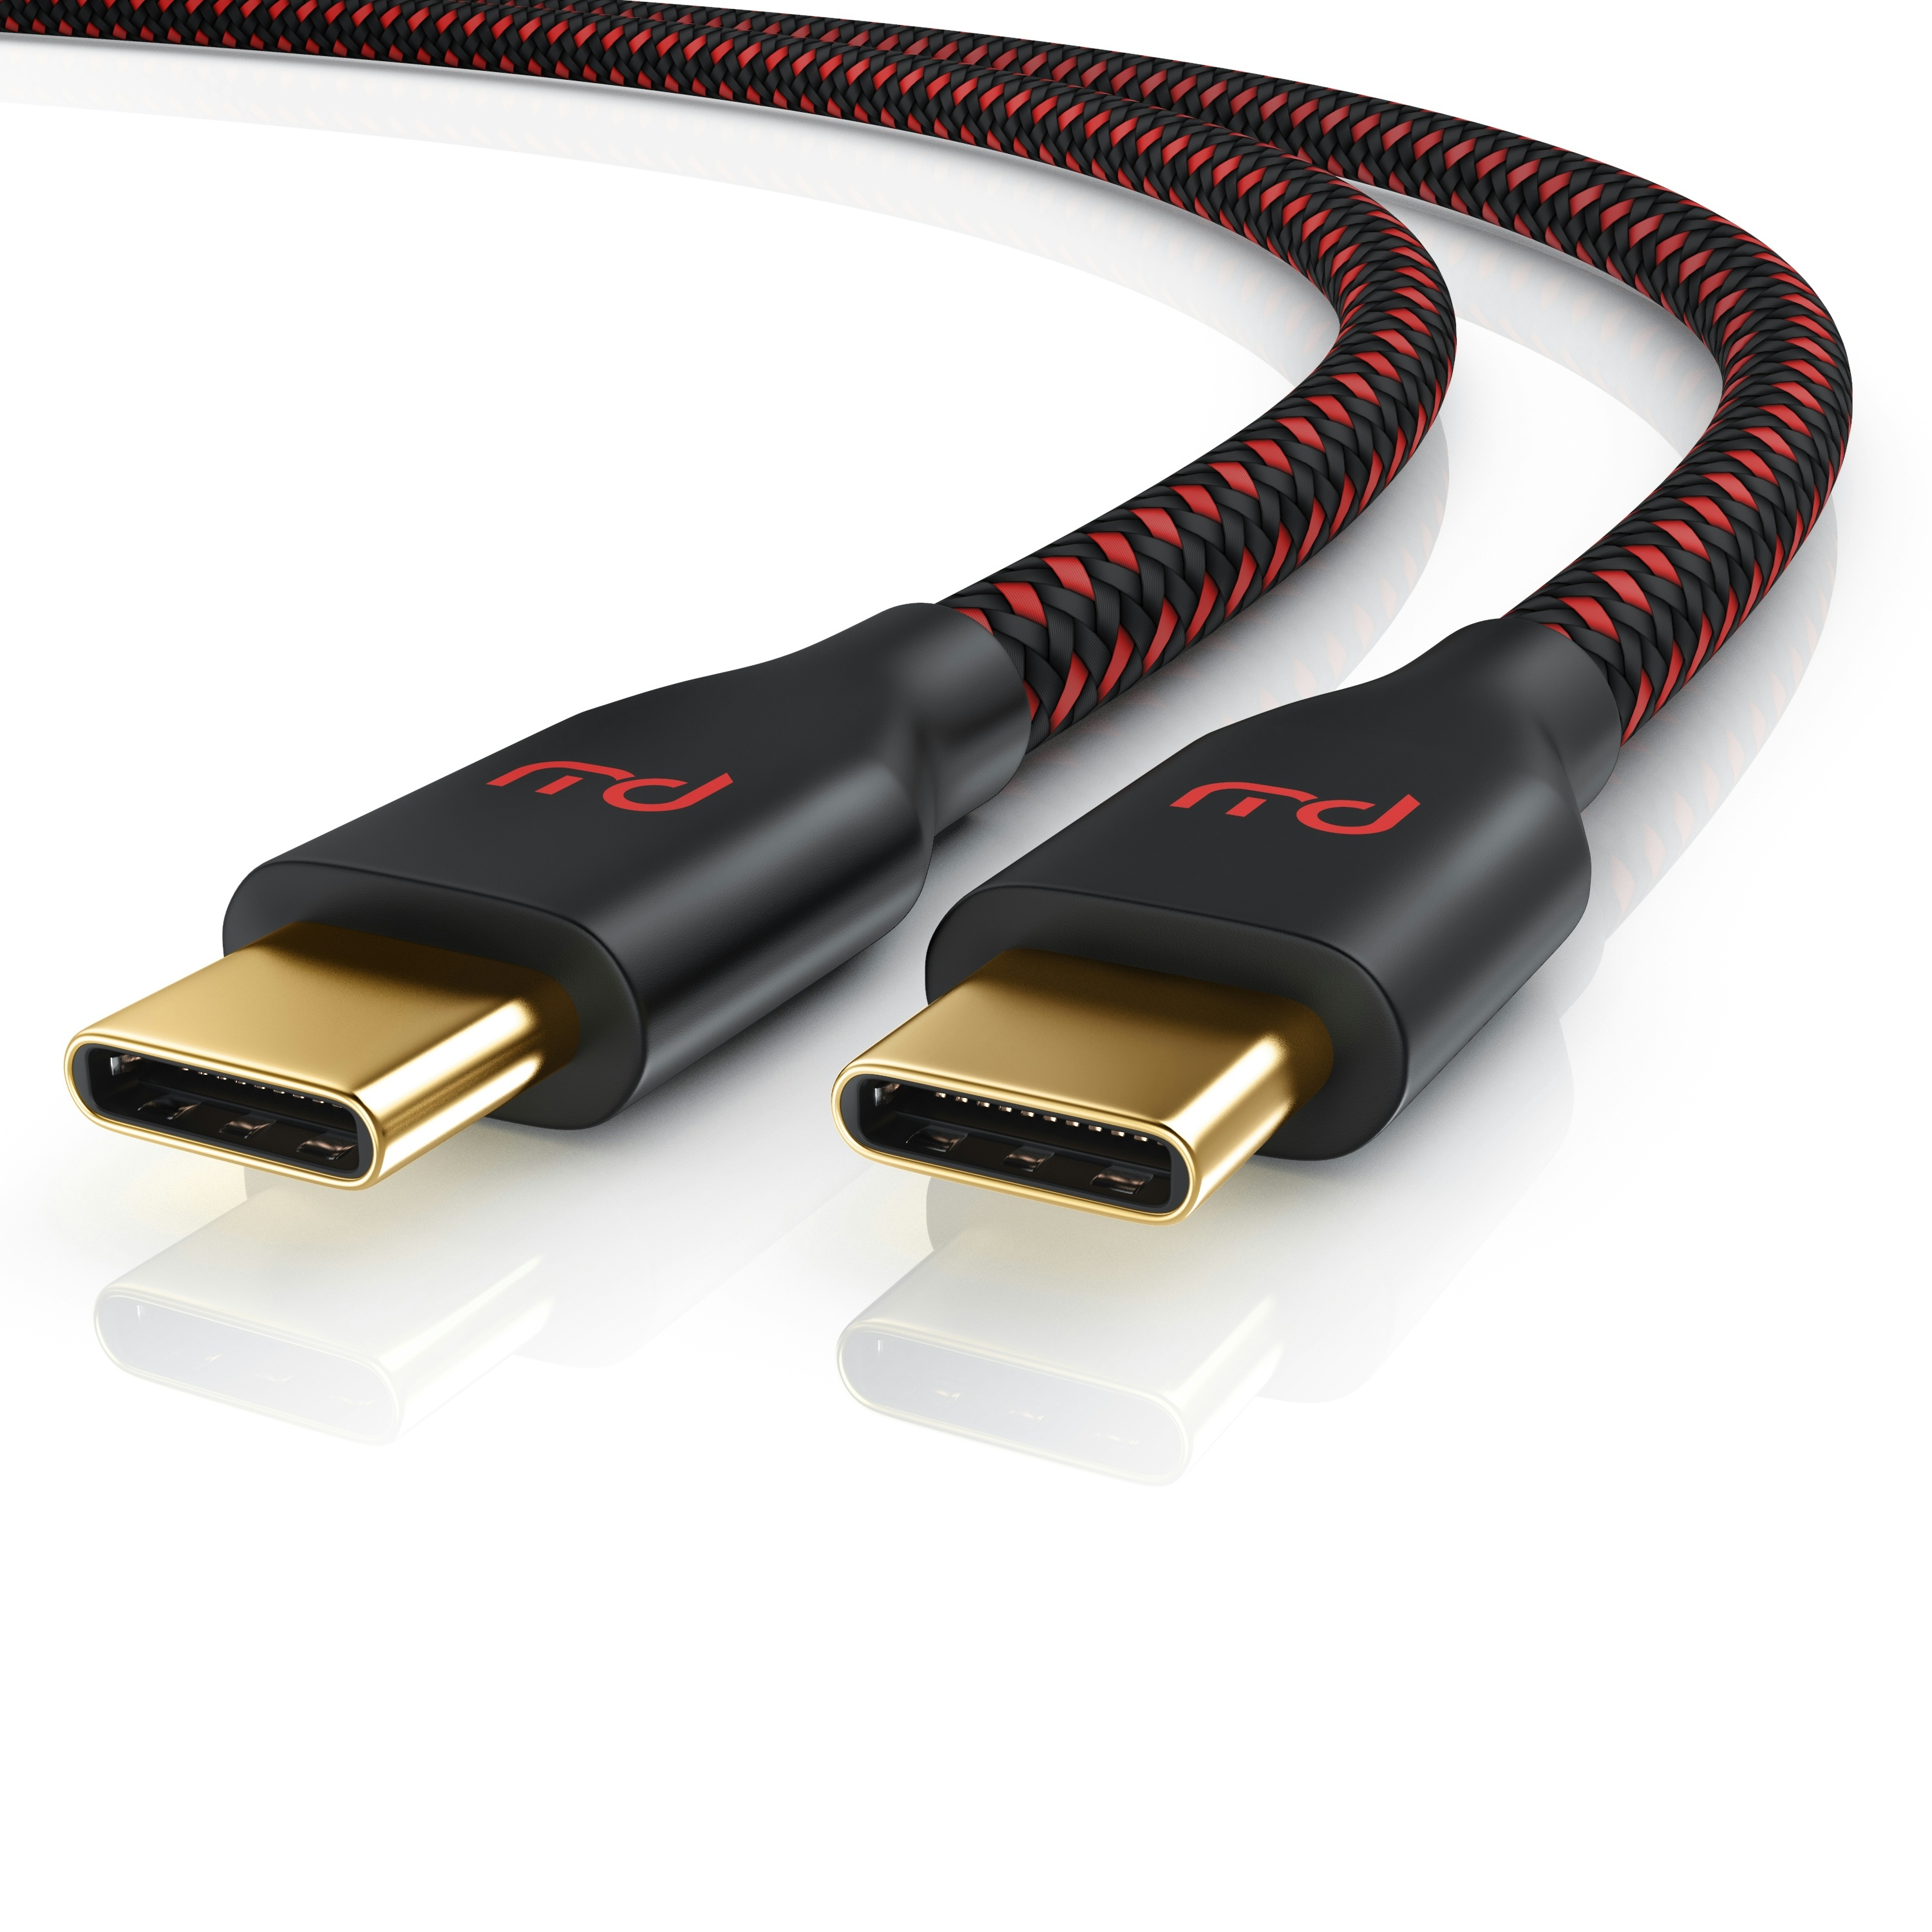 Primewire USB-C 3.1 zu USB C Gen 2 Kabel / Ladekabel / Datenkabel für Smartphone, Tablet - 0,5m